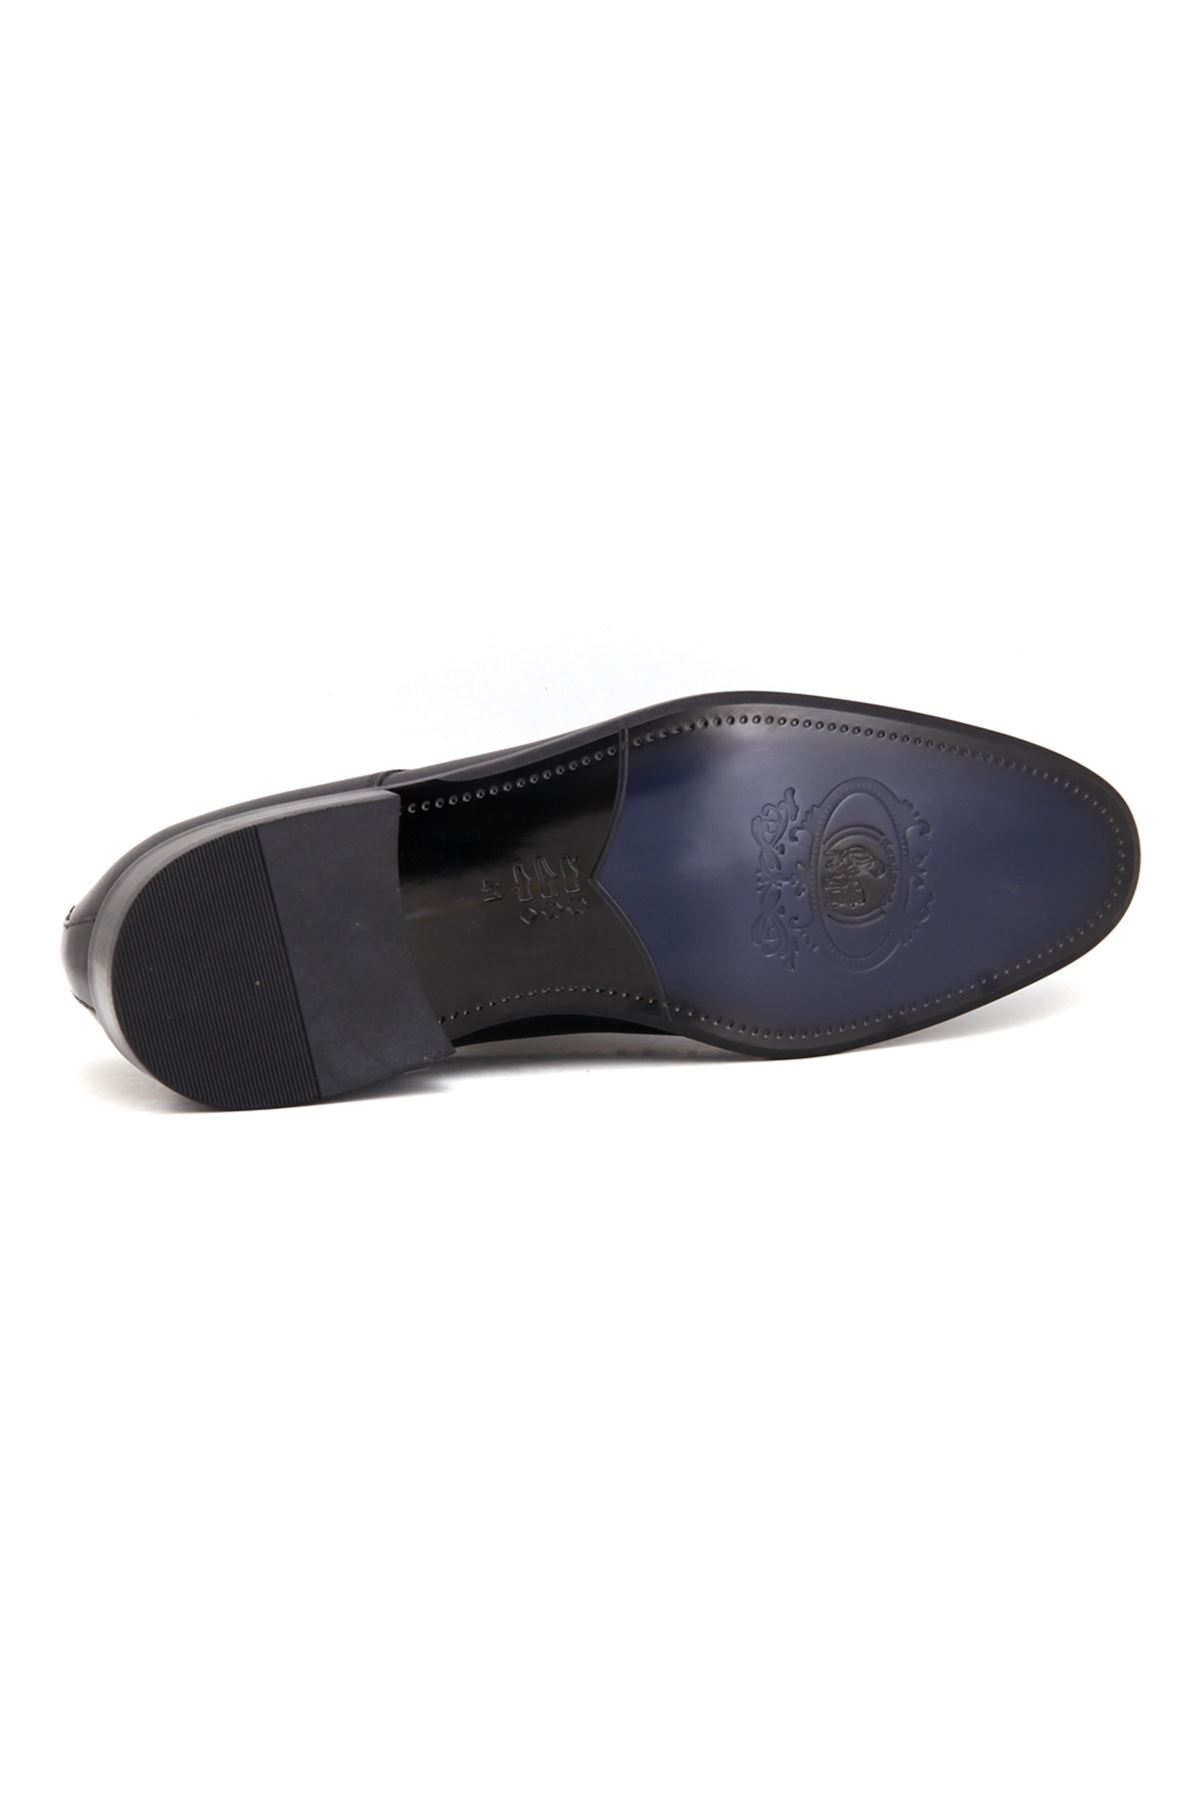 3124 Libero Klasik Erkek Ayakkabı - Siyah